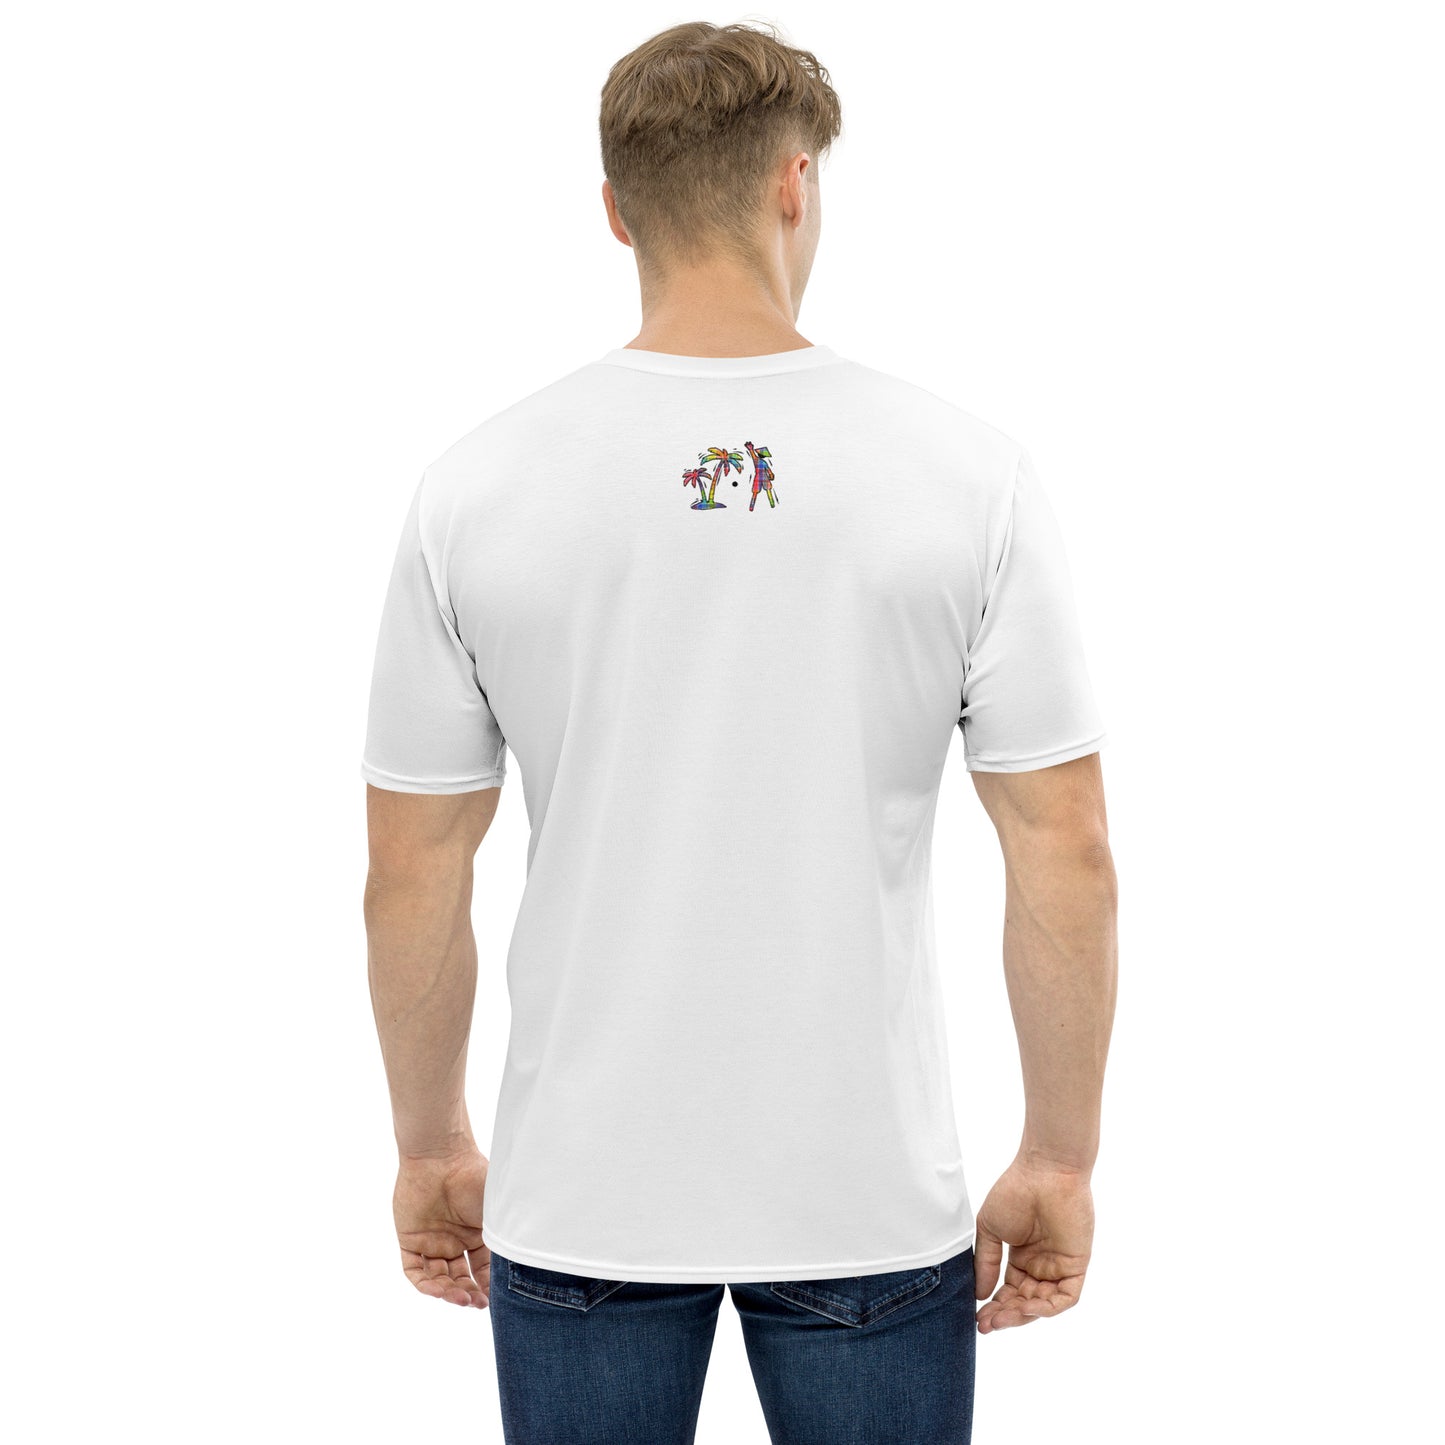 White V.Localized (Madras) Men’s Dry-Fit T-Shirt